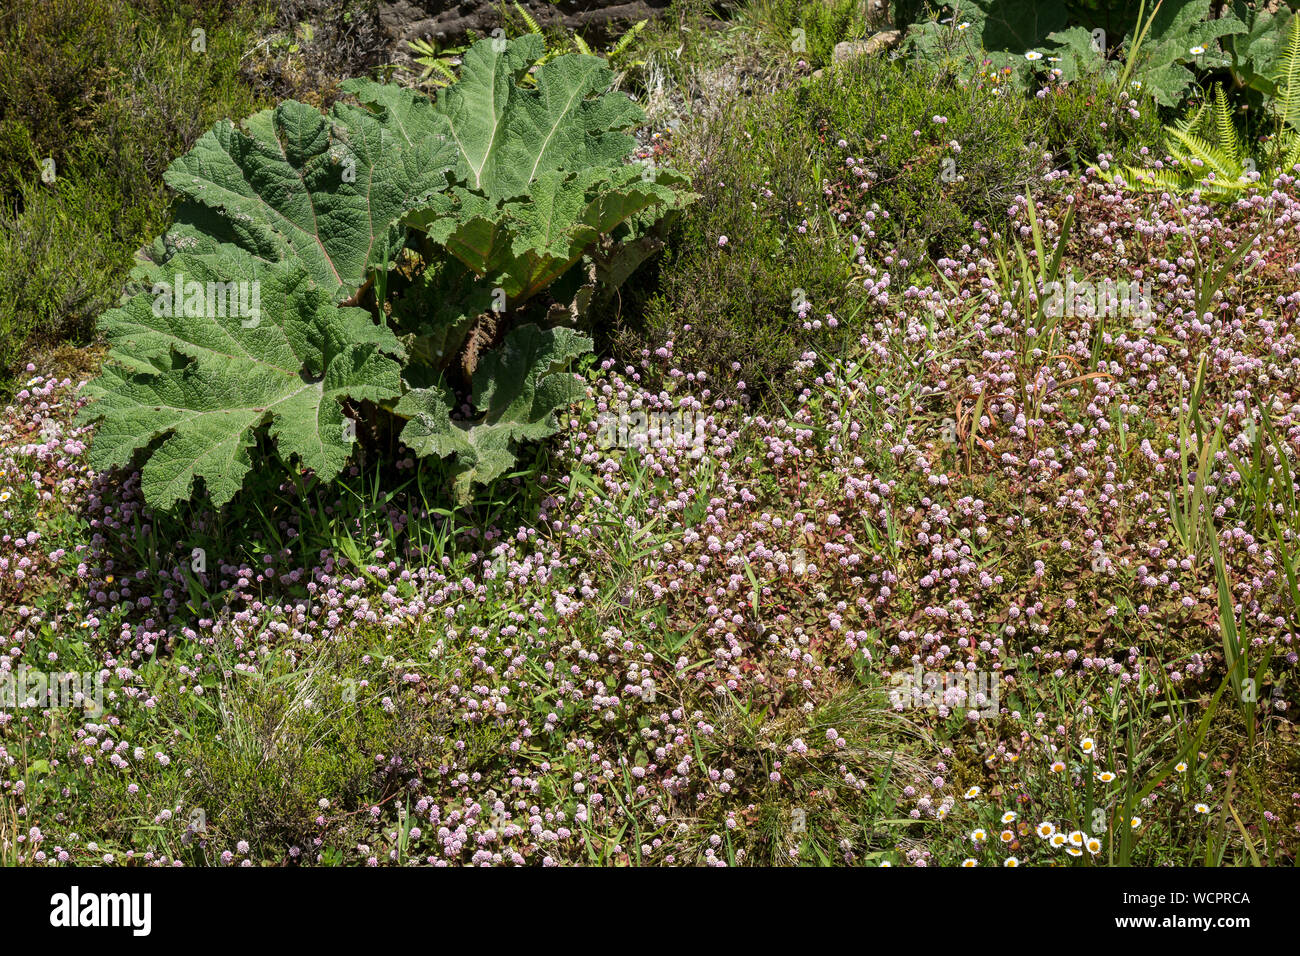 Grosse Blätter von gunnera Dolmetsch, wächst wild in der Natur unter anderem Pflanzen. Sao Miguel, Azoren, Portugal. Stockfoto